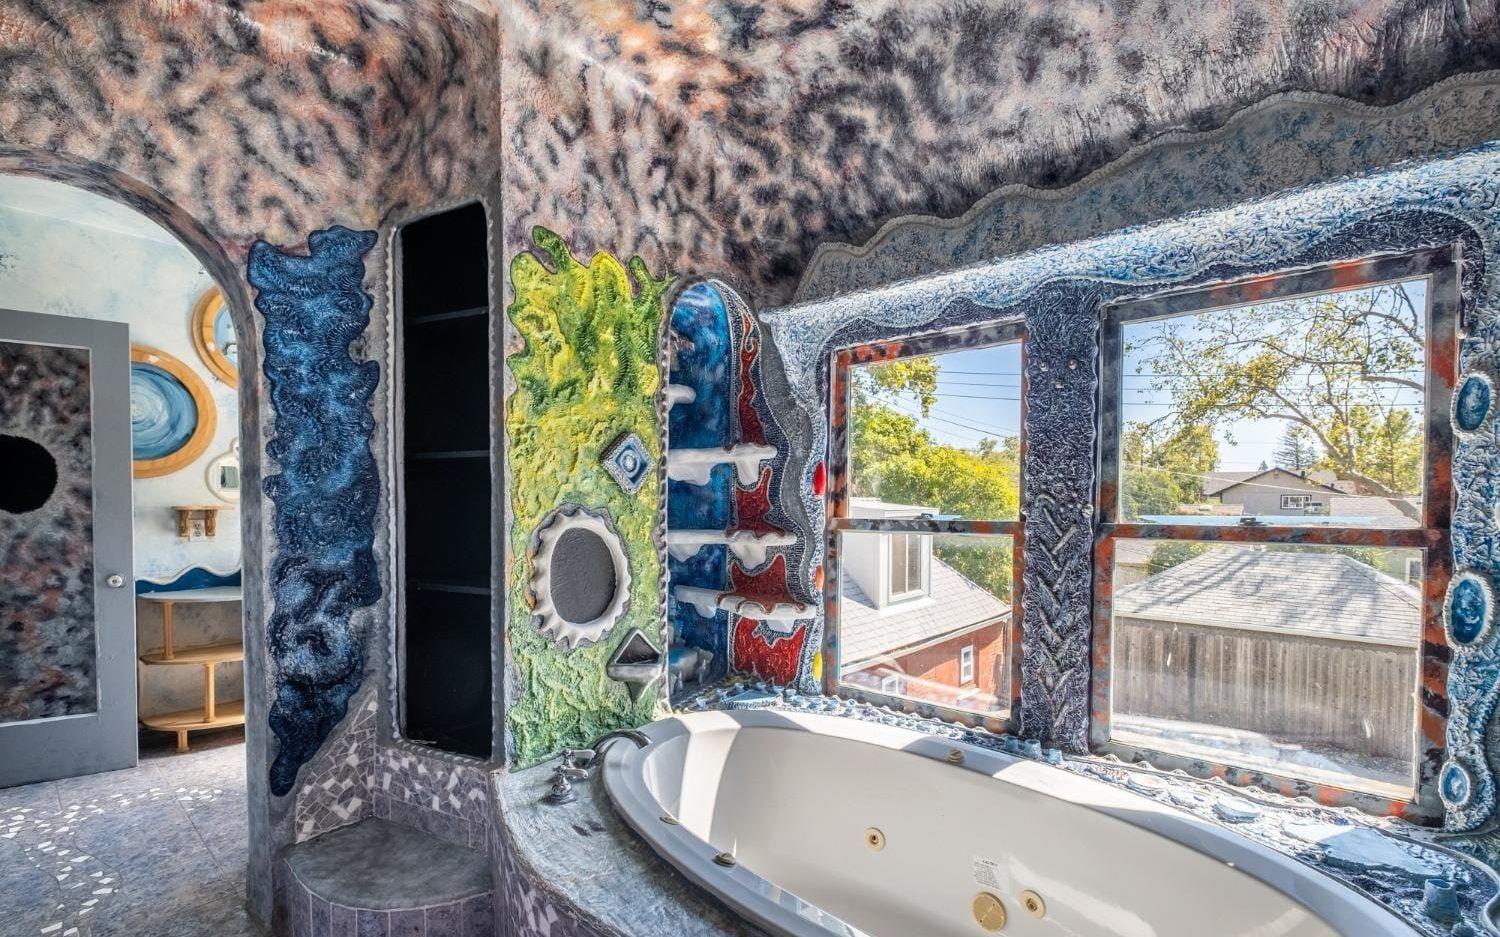 Vid sovrummet ligger ett färgglatt badrum med bubbelbad. Där möter de färgglada väggarna ett leopardmönstrat tak.